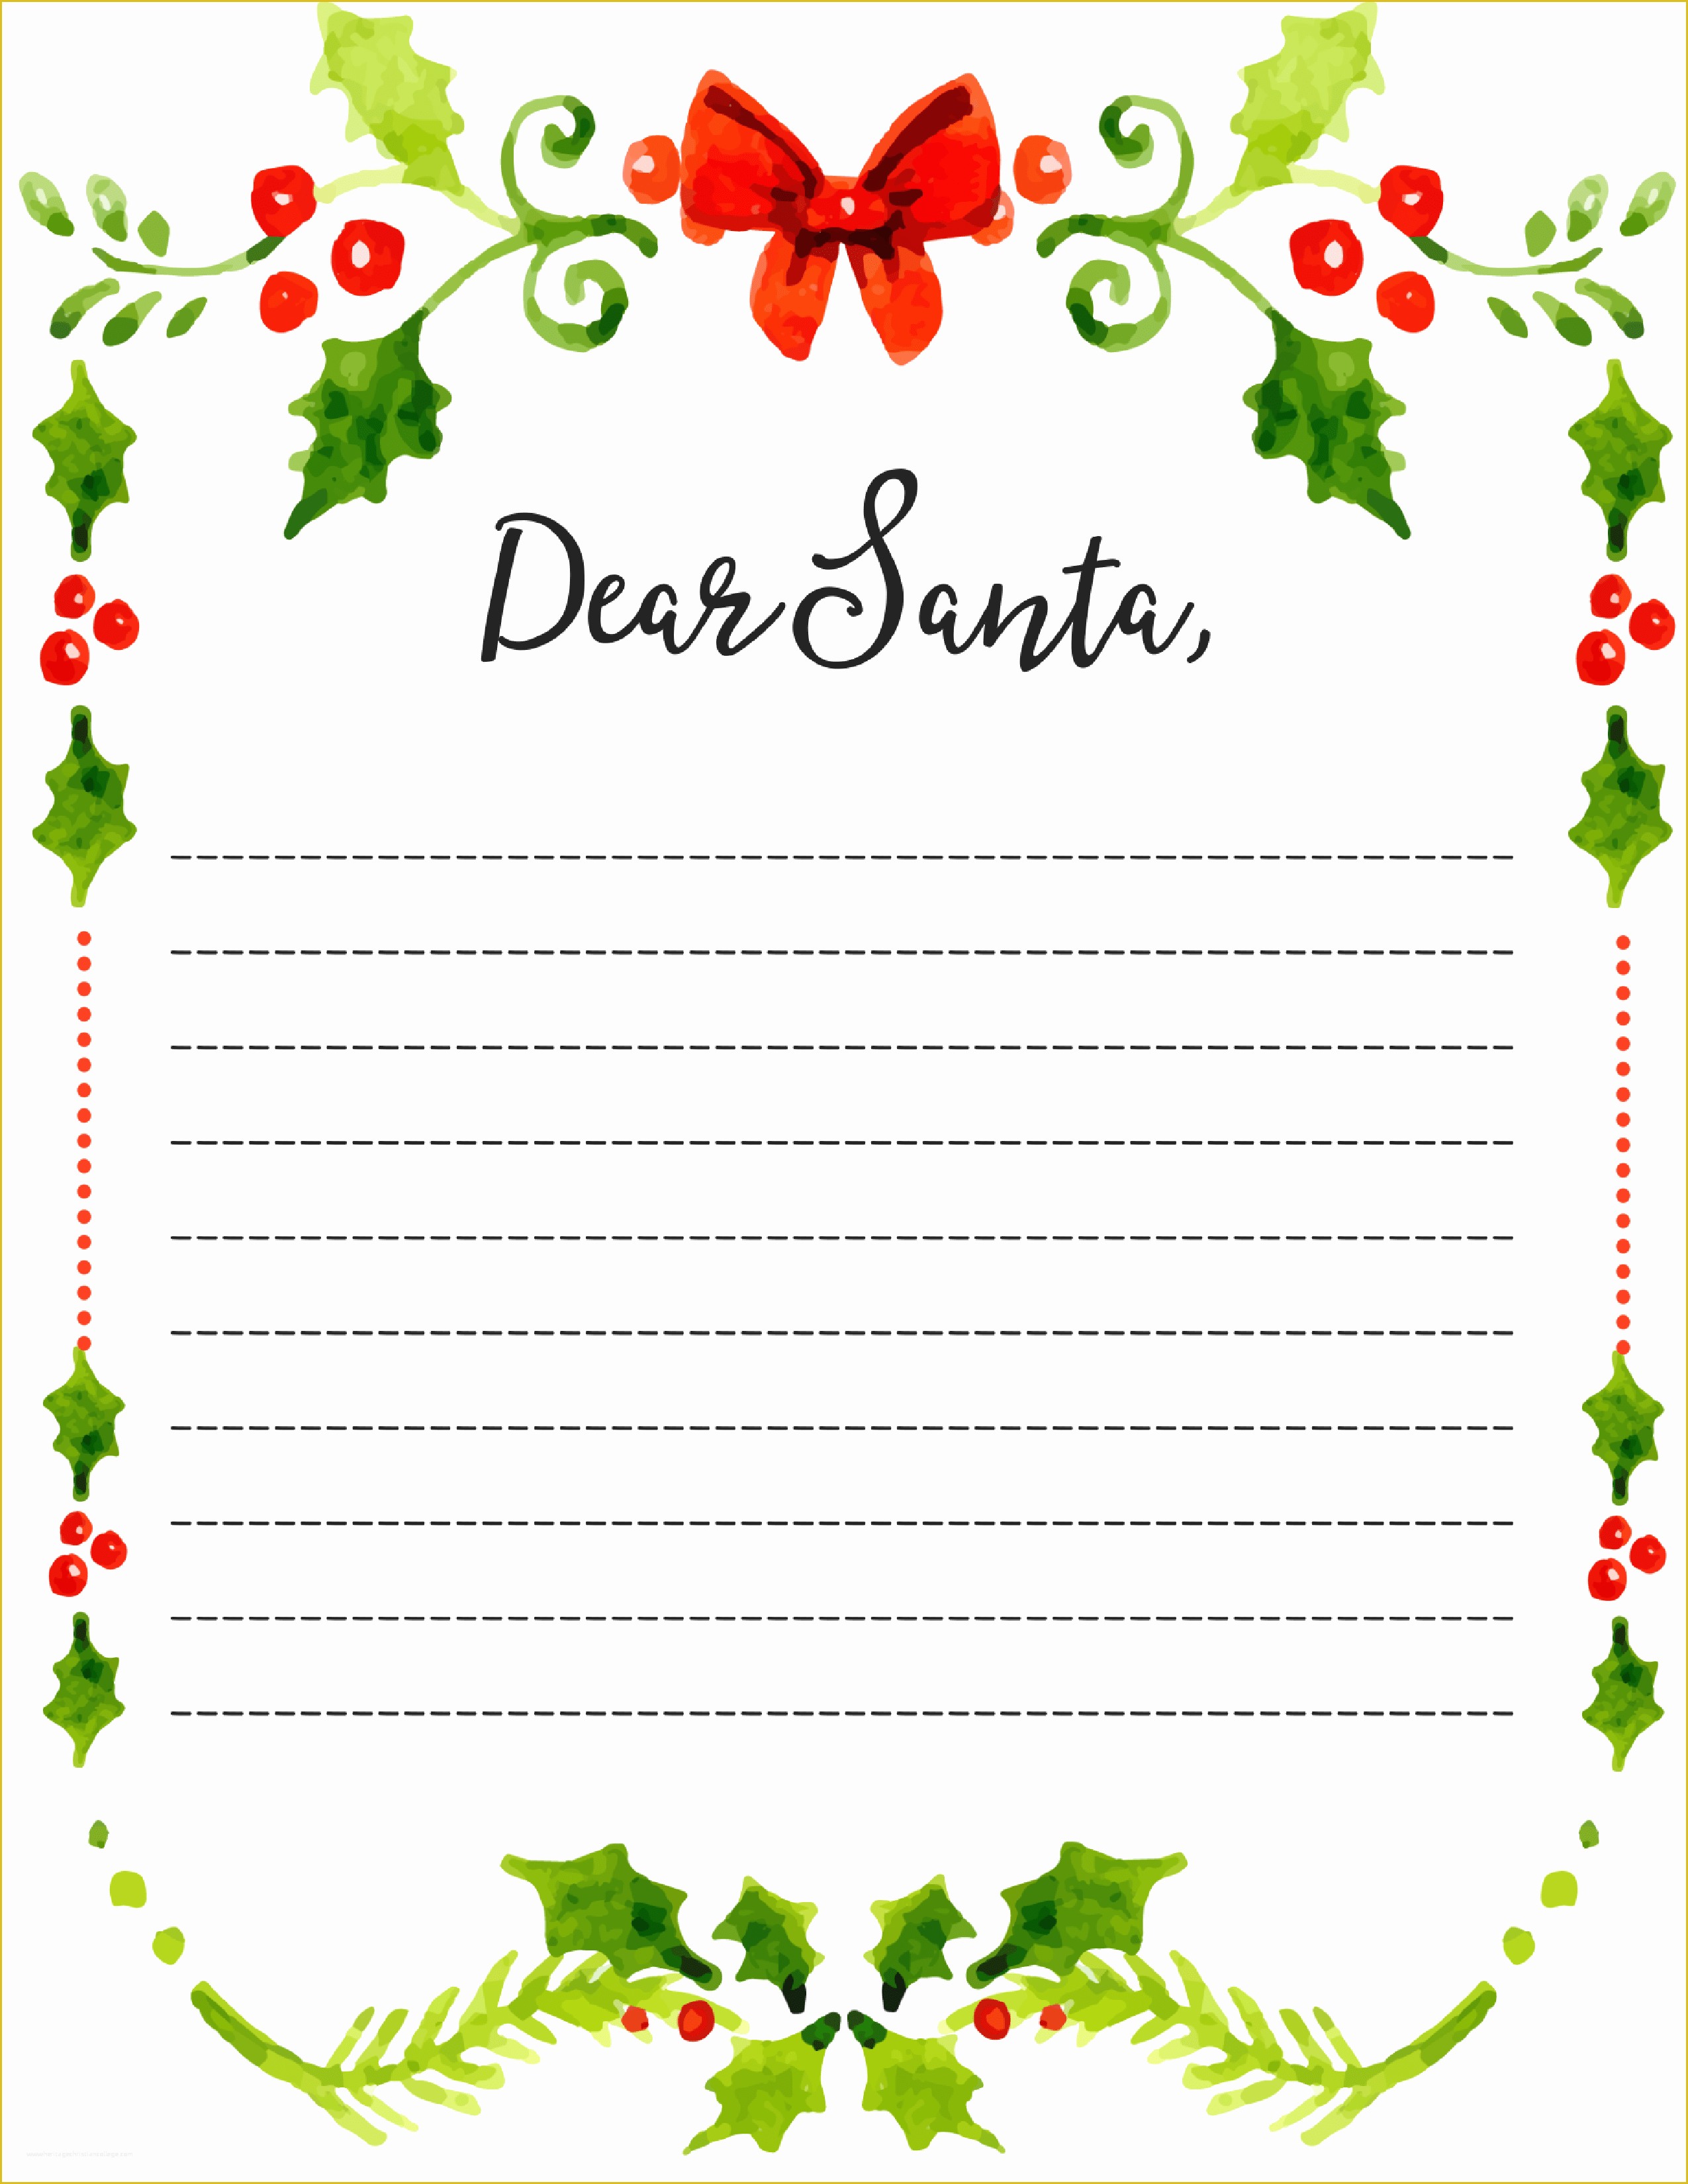 Dear Santa Letter Template Free Of Dear Santa Fill In Letter Template